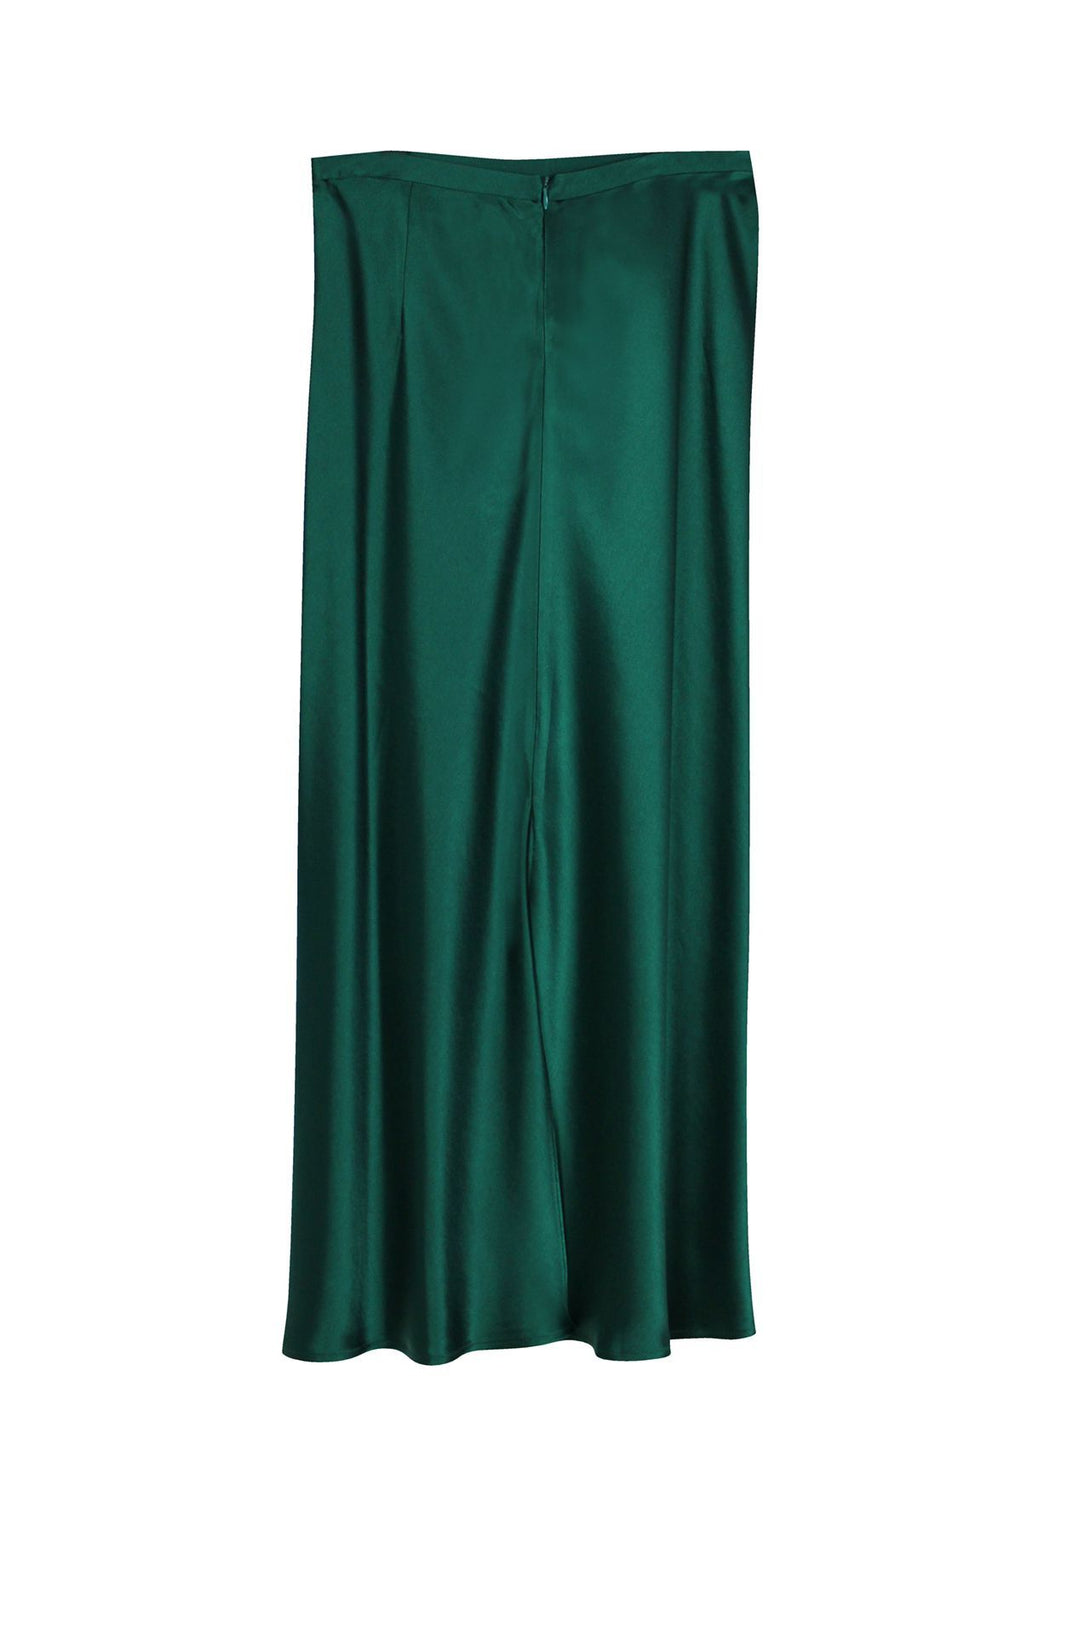 Women-Designer-Green-Skirt-By-Kyle-Richards